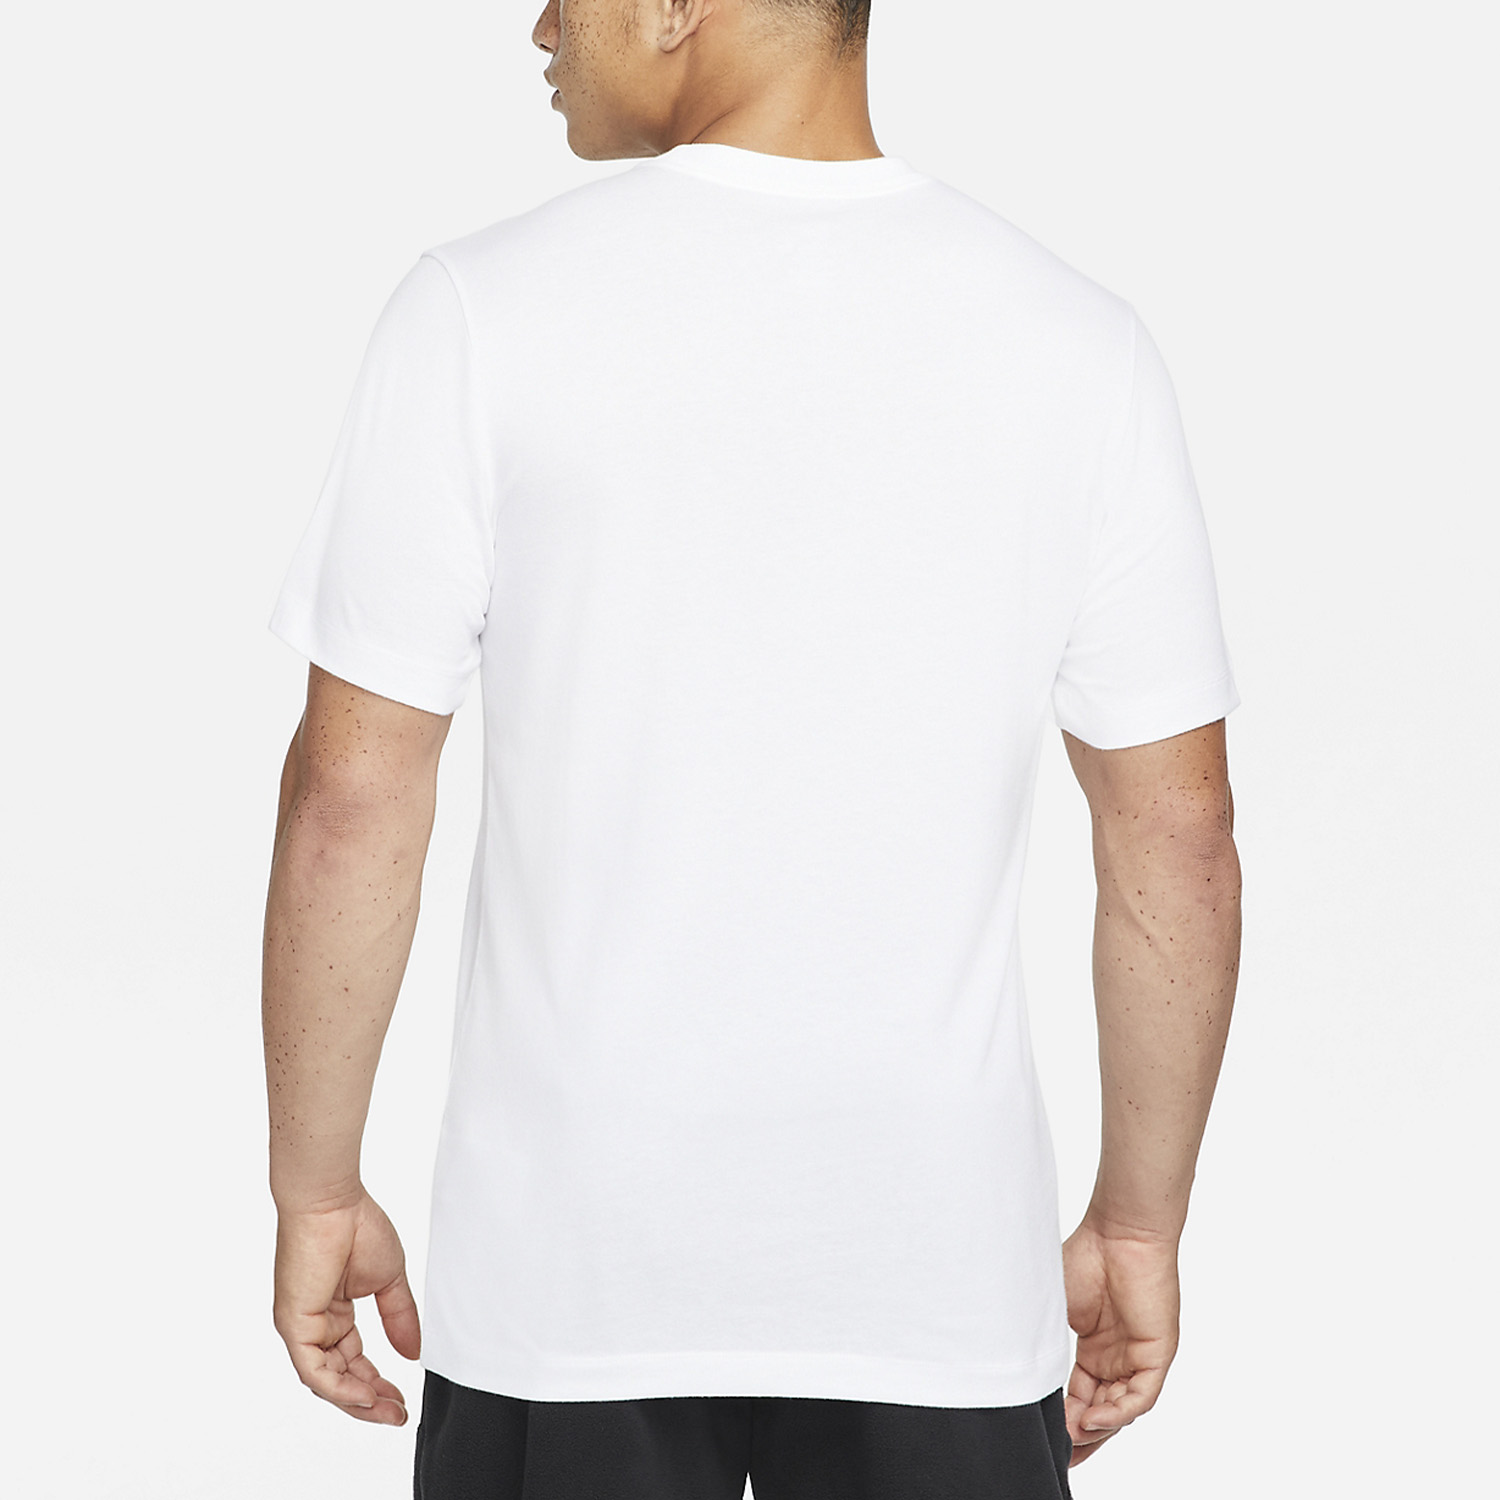 Nike Dri-FIT Camo Men's Training T-Shirt - White